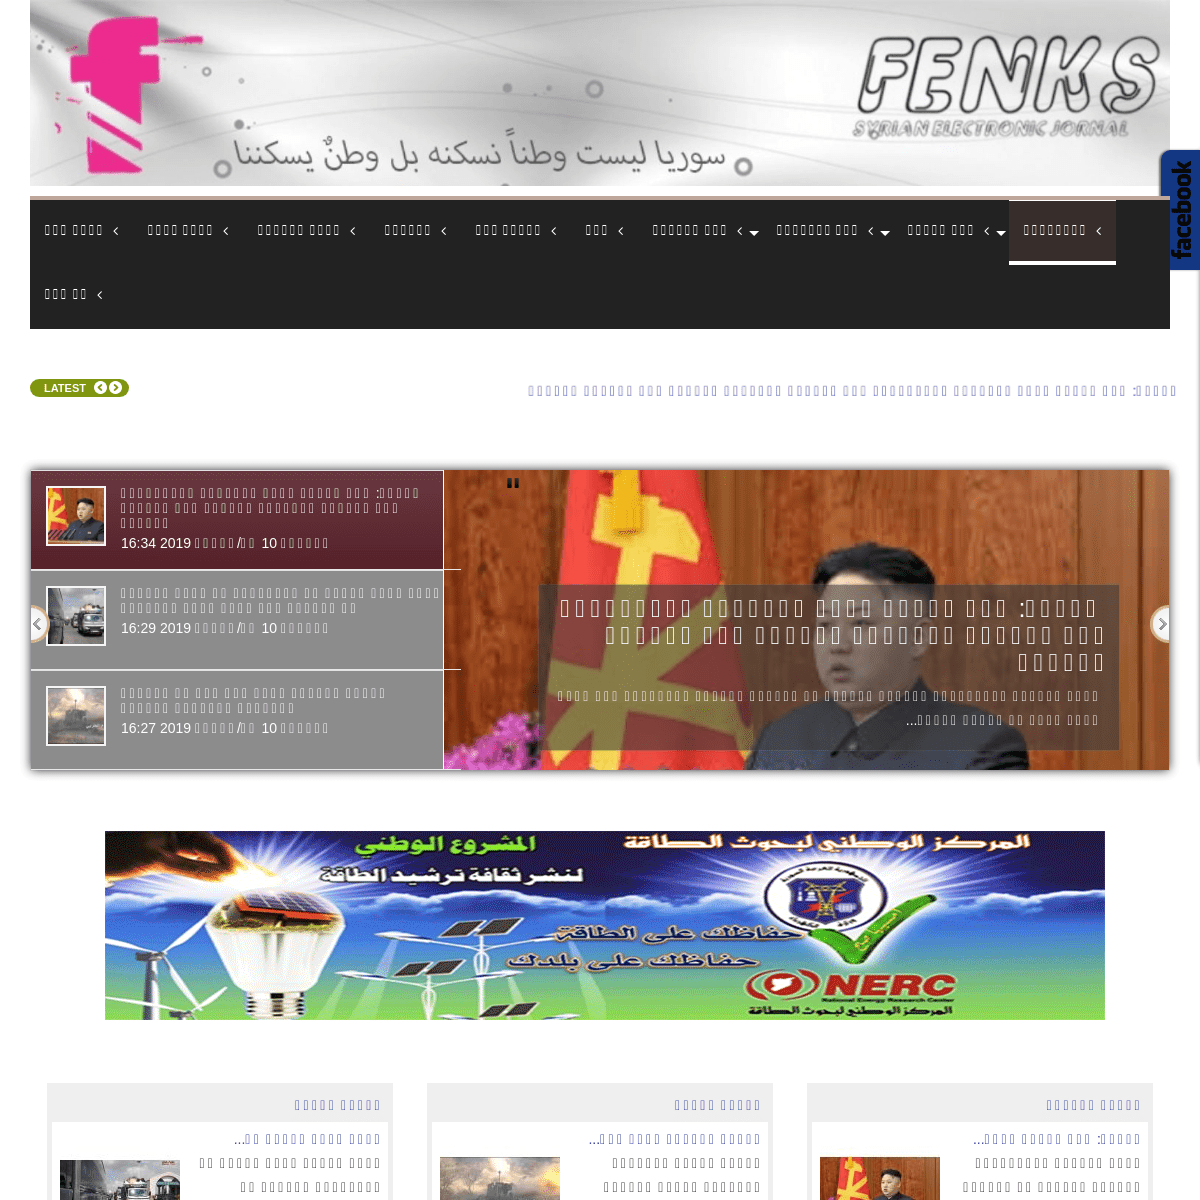 فينكس | FENKS - الرئيسية